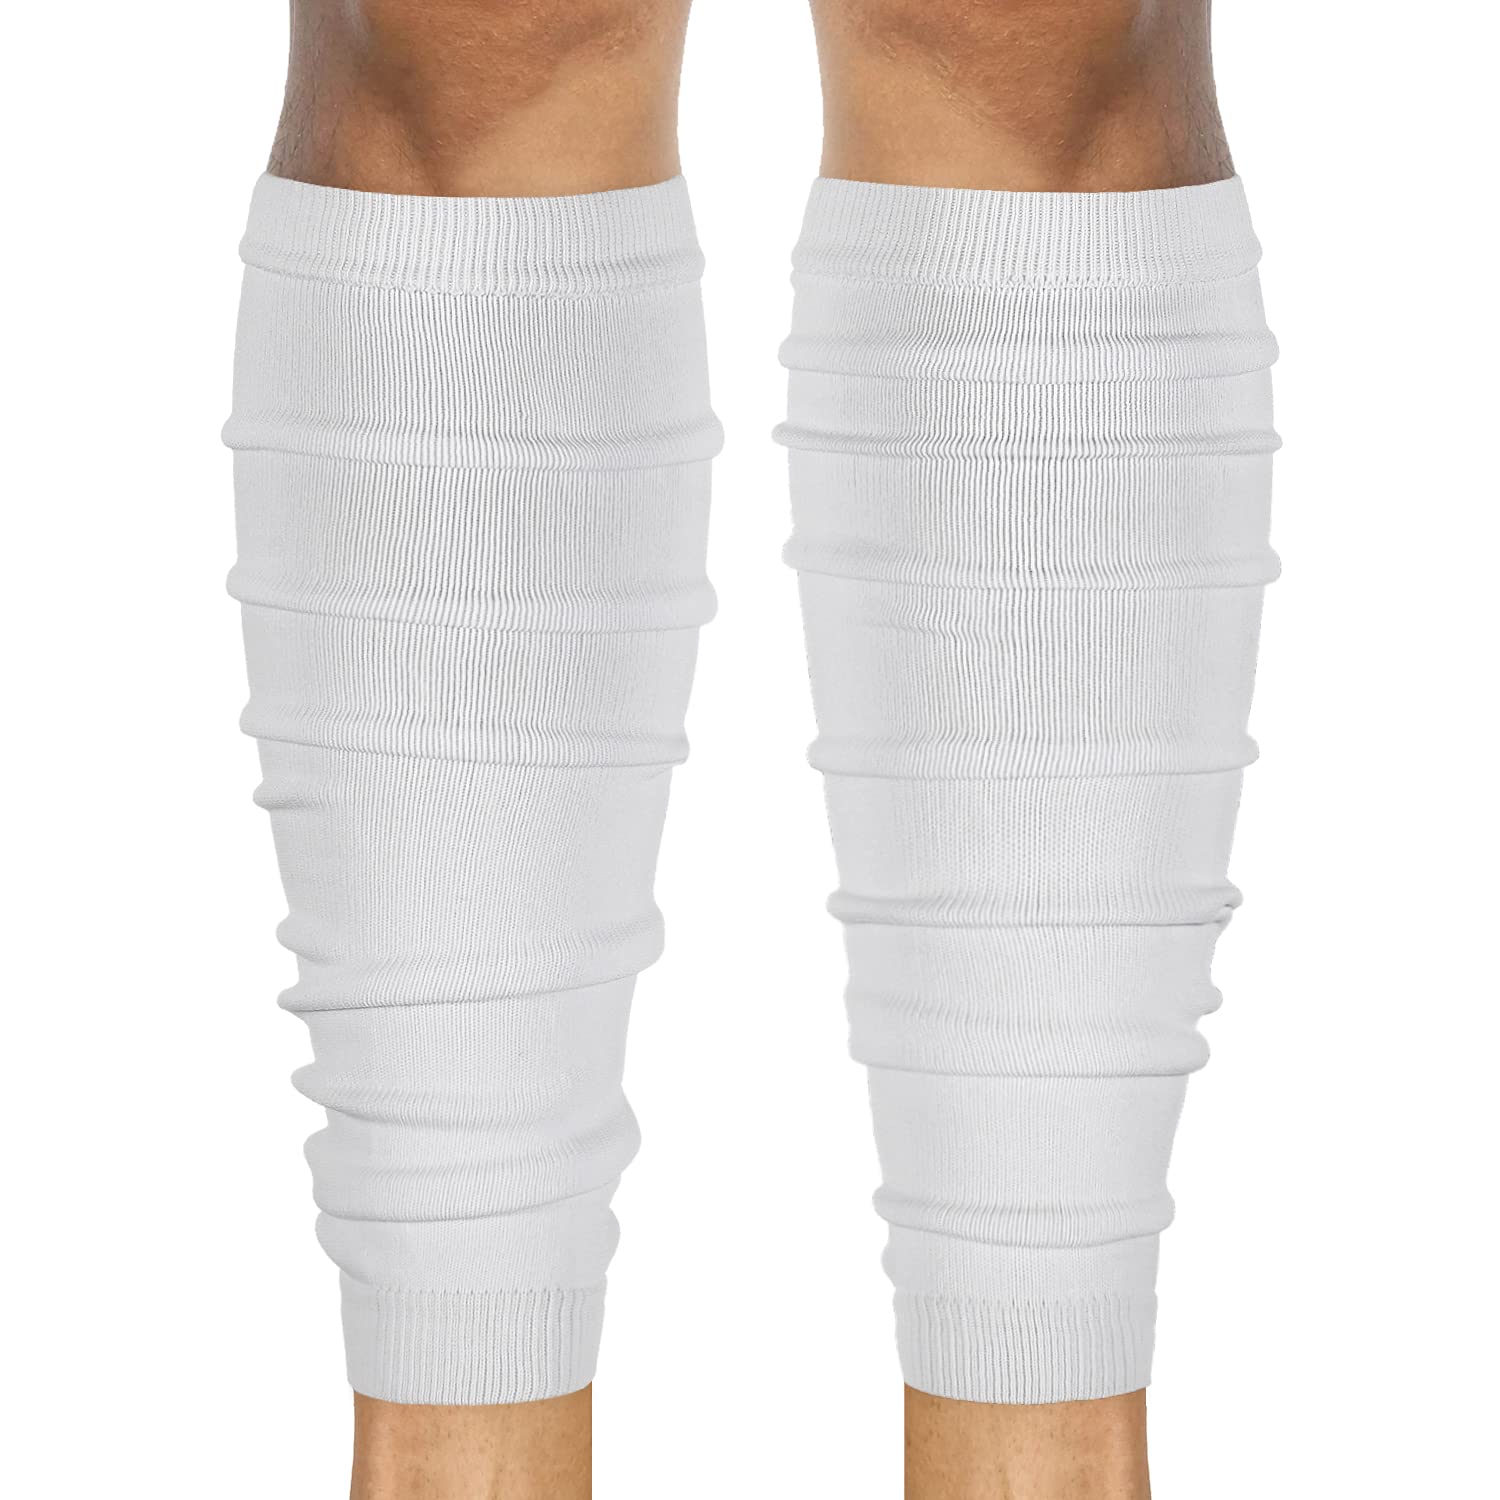  Zensah Full Leg Compression Sleeve - Long Full Length Support  for Thigh, Knee, Calf for Men, Women, Running, Basketball, Football (Small,  Black) : Health & Household